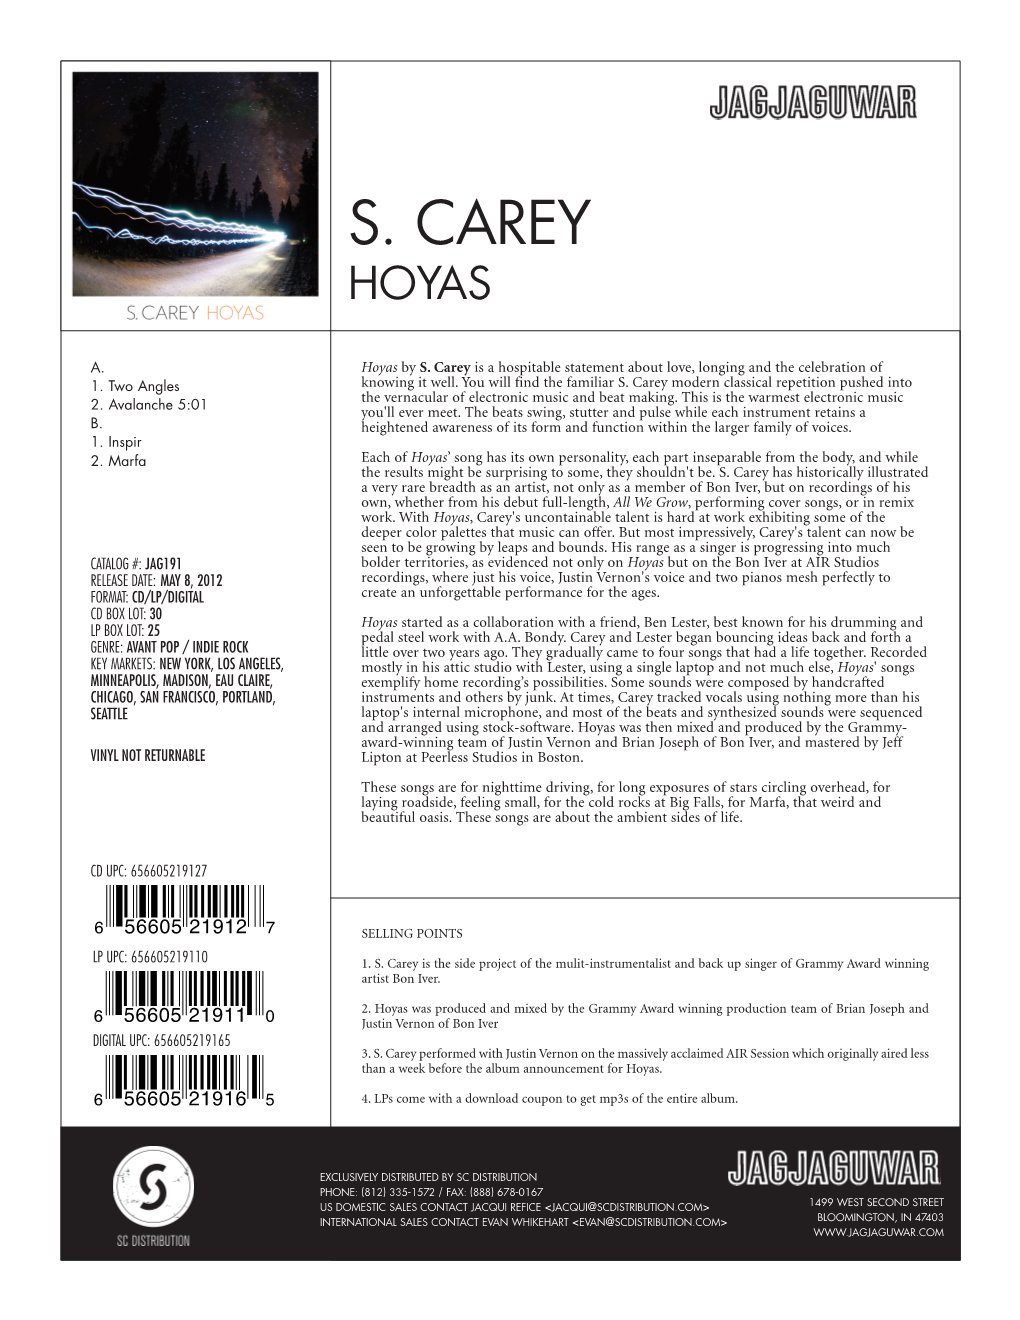 S. Carey Hoyas